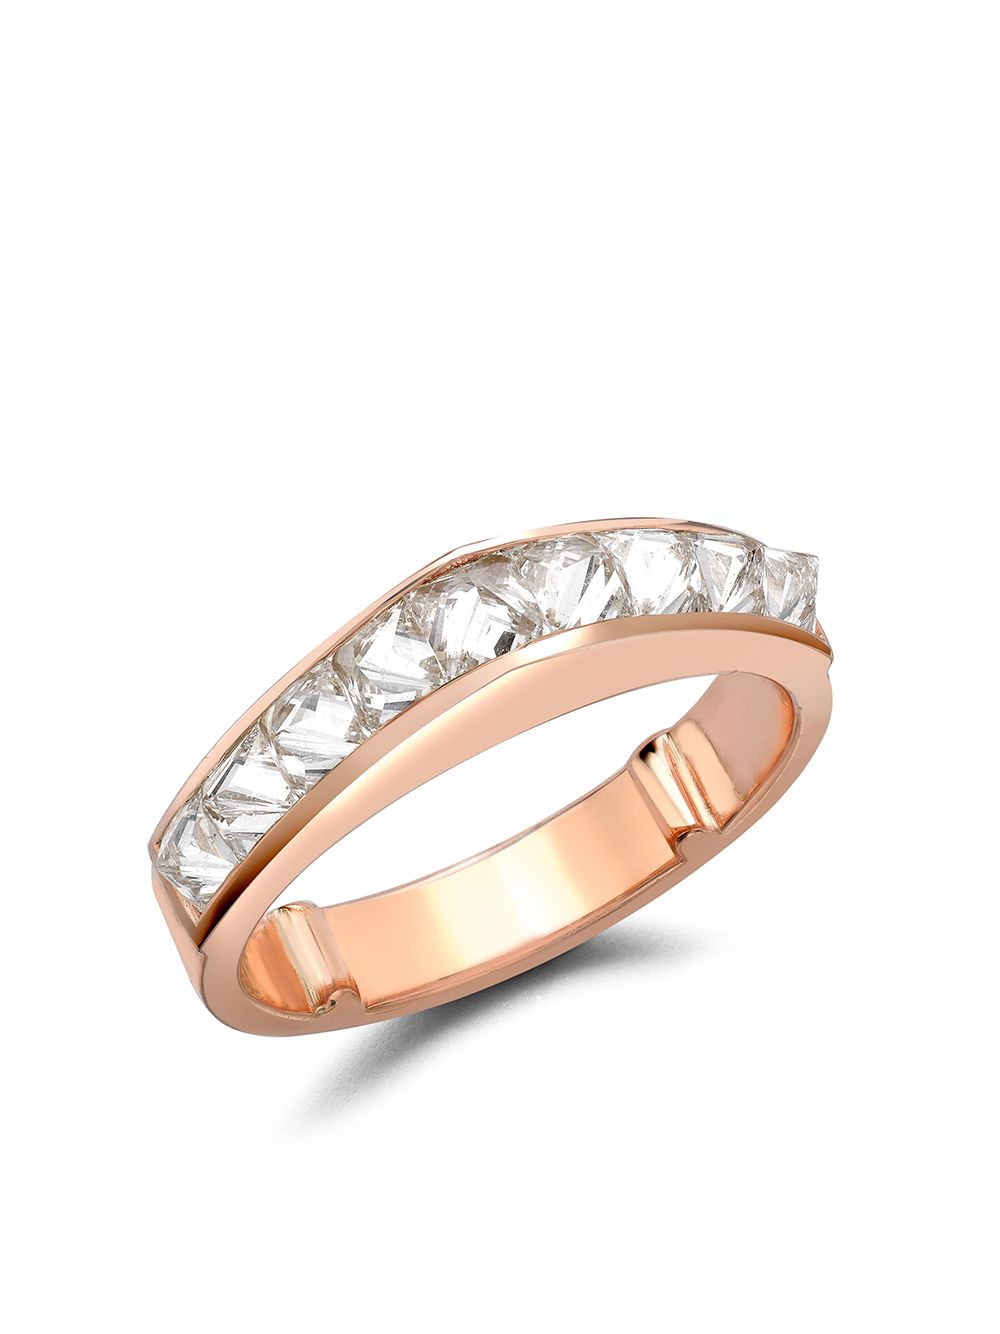 Pragnell 18kt rose gold RockChic diamond peaked ring - Pink von Pragnell